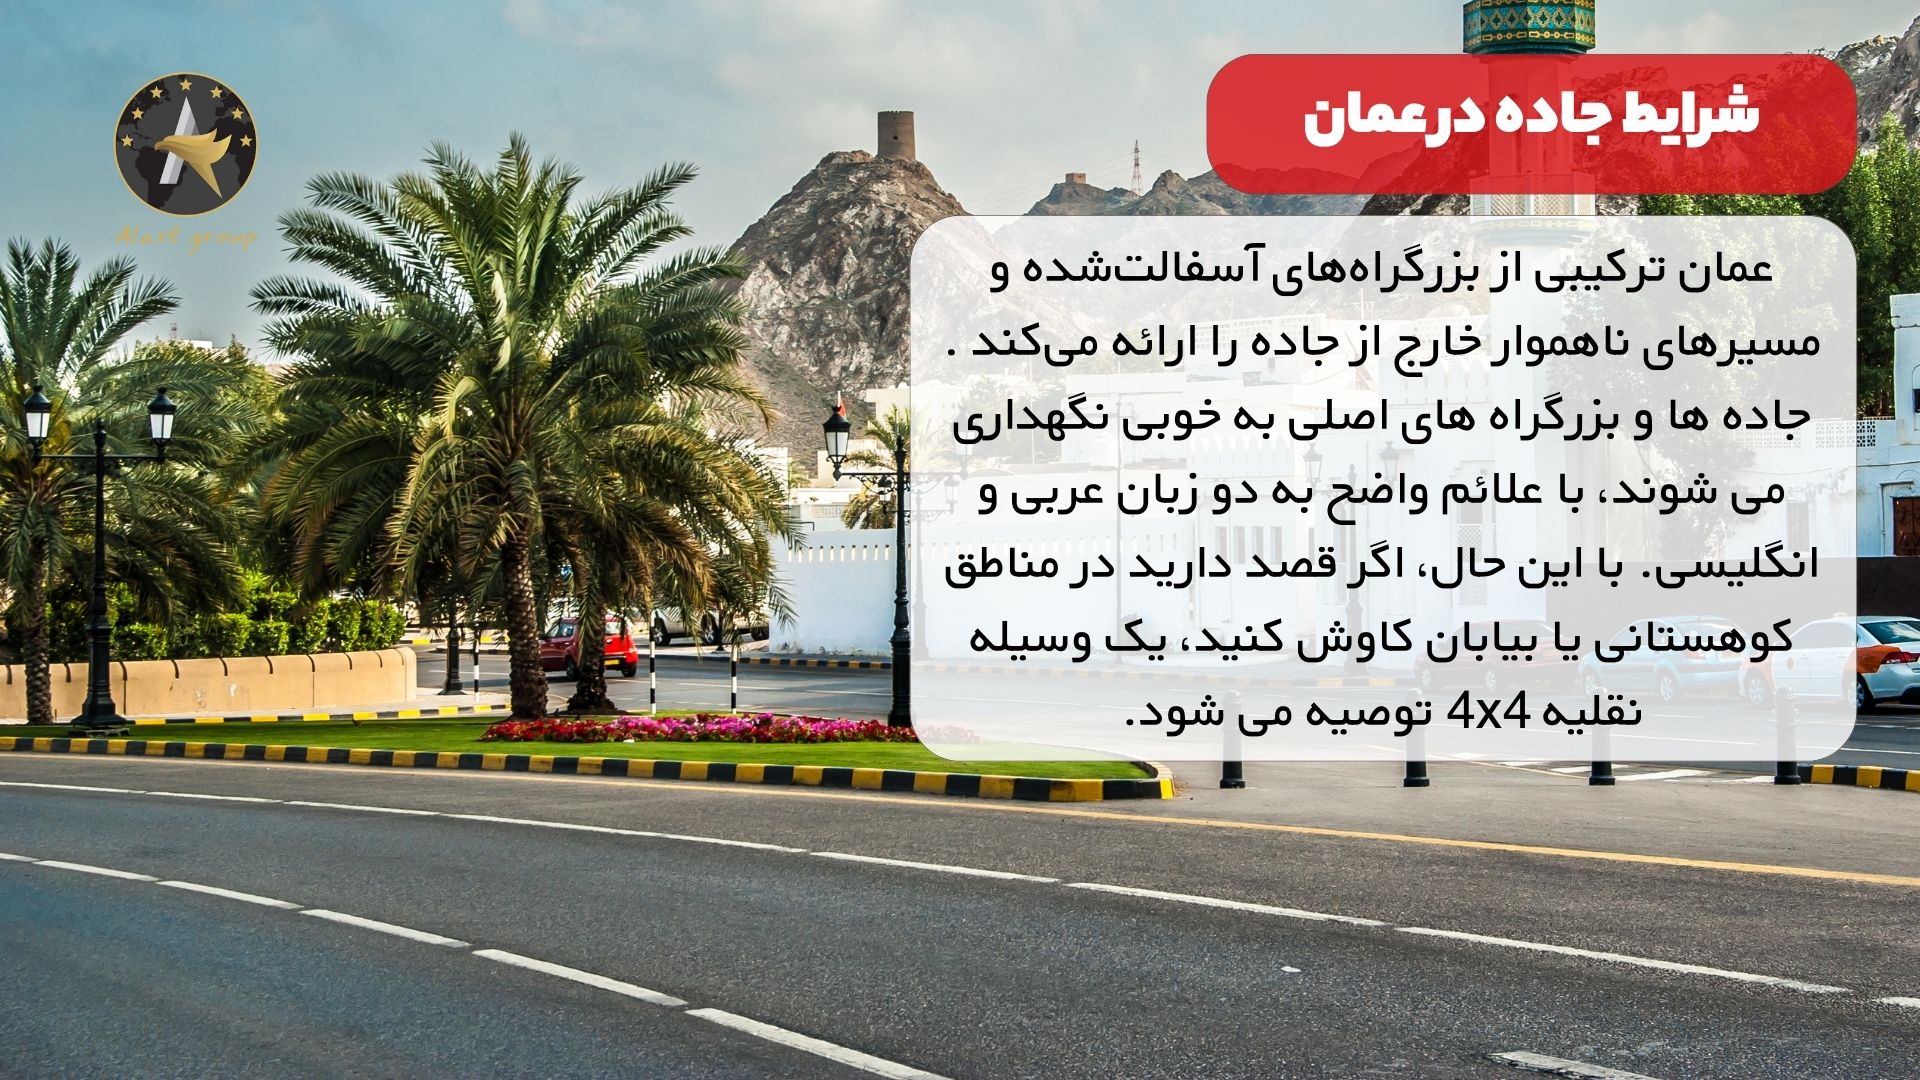 شرایط جاده در عمان